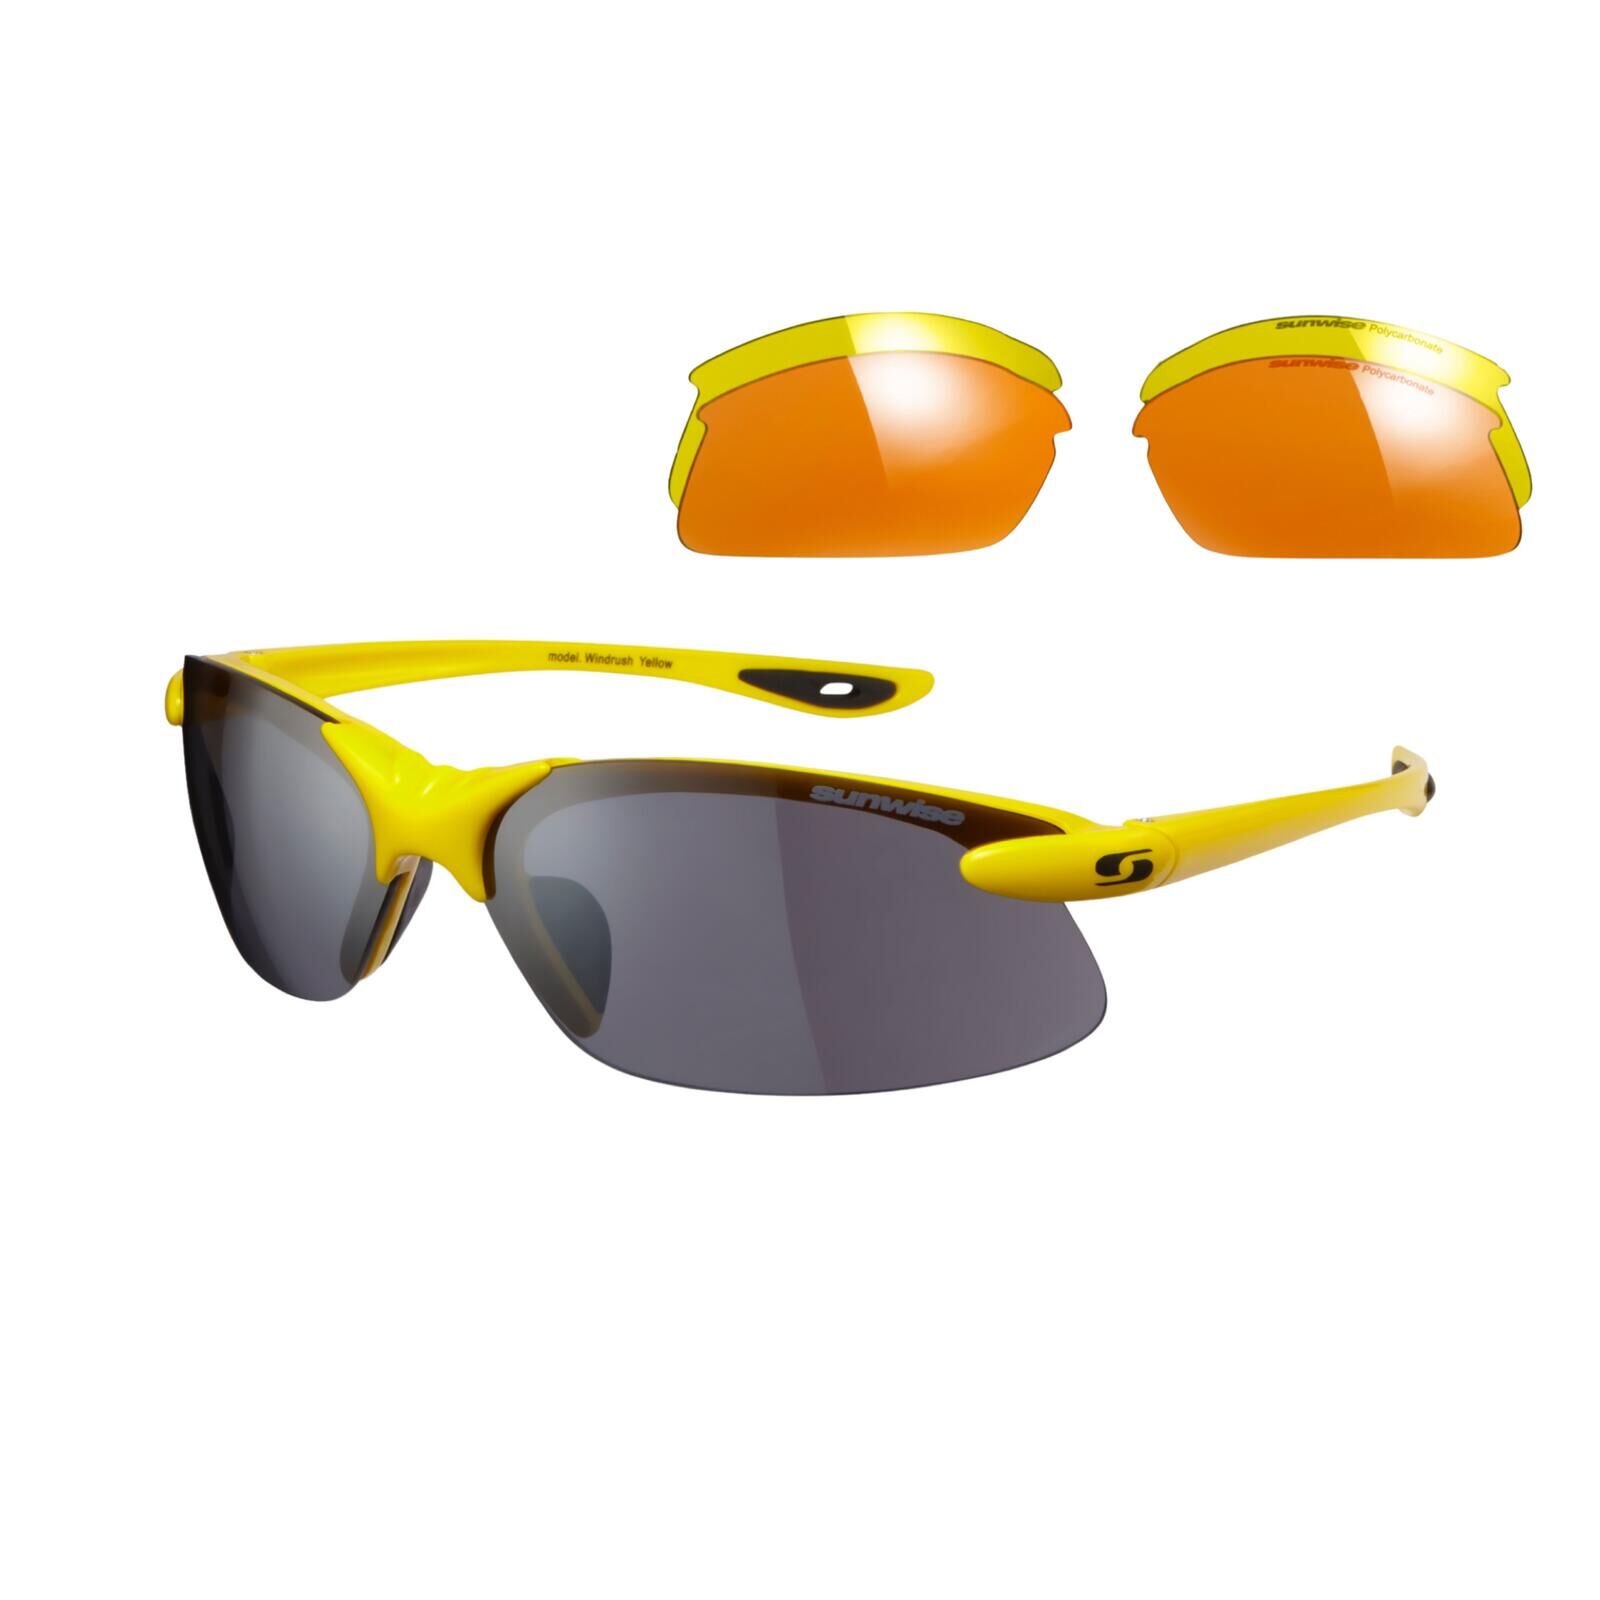 SUNWISE Windrush Sports Sunglasses - Category 1-3